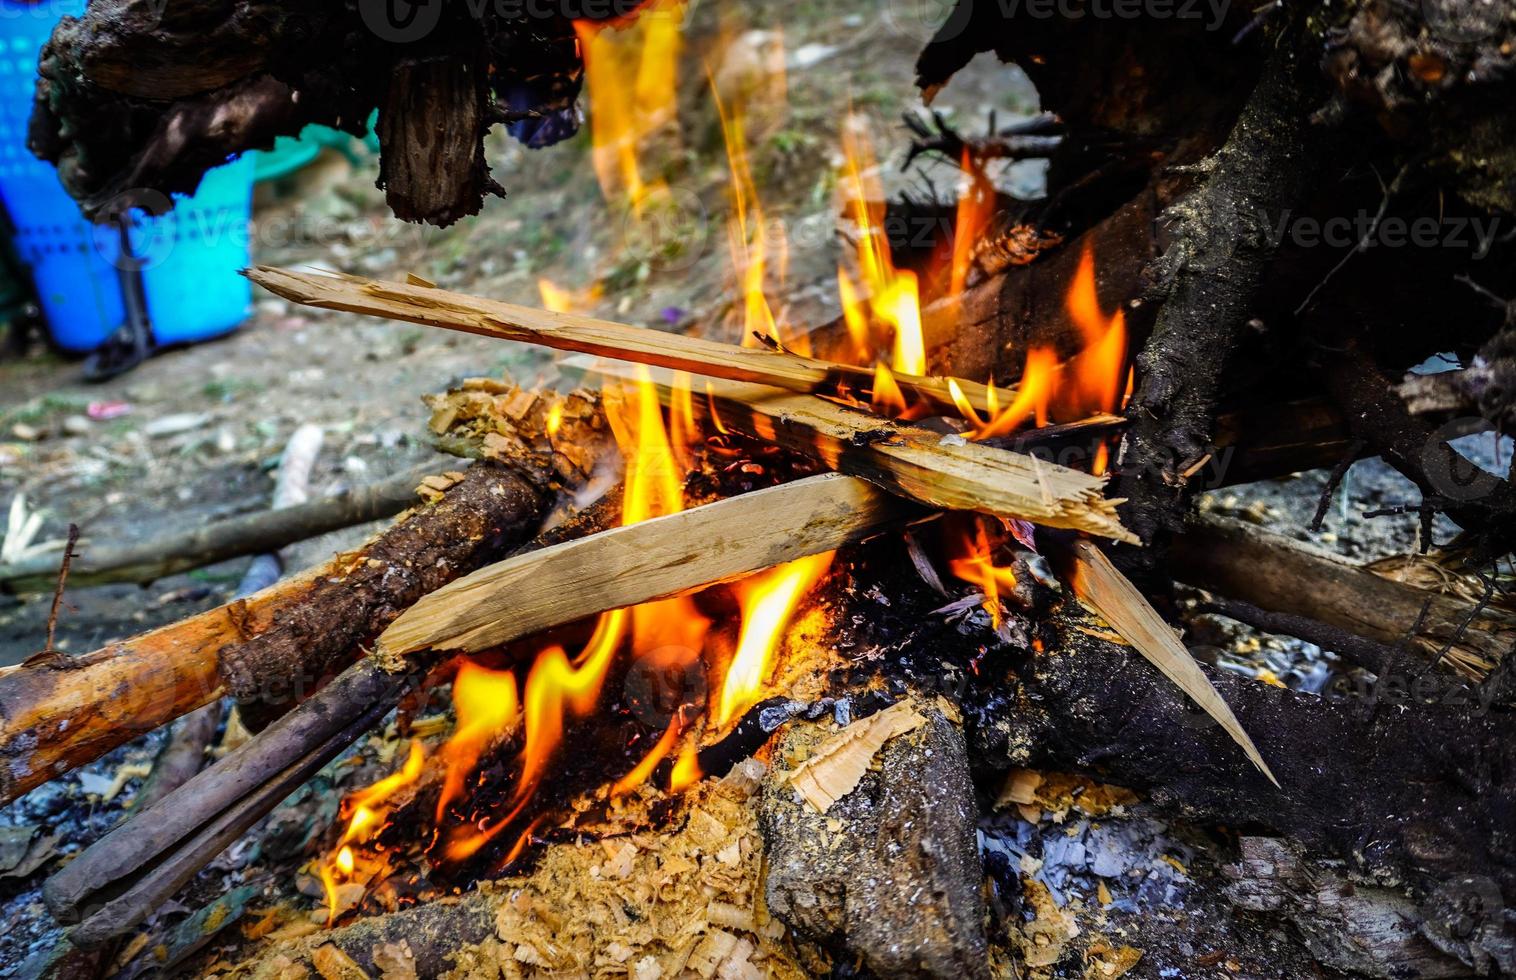 fuego de madera imagen hd sesion fria foto